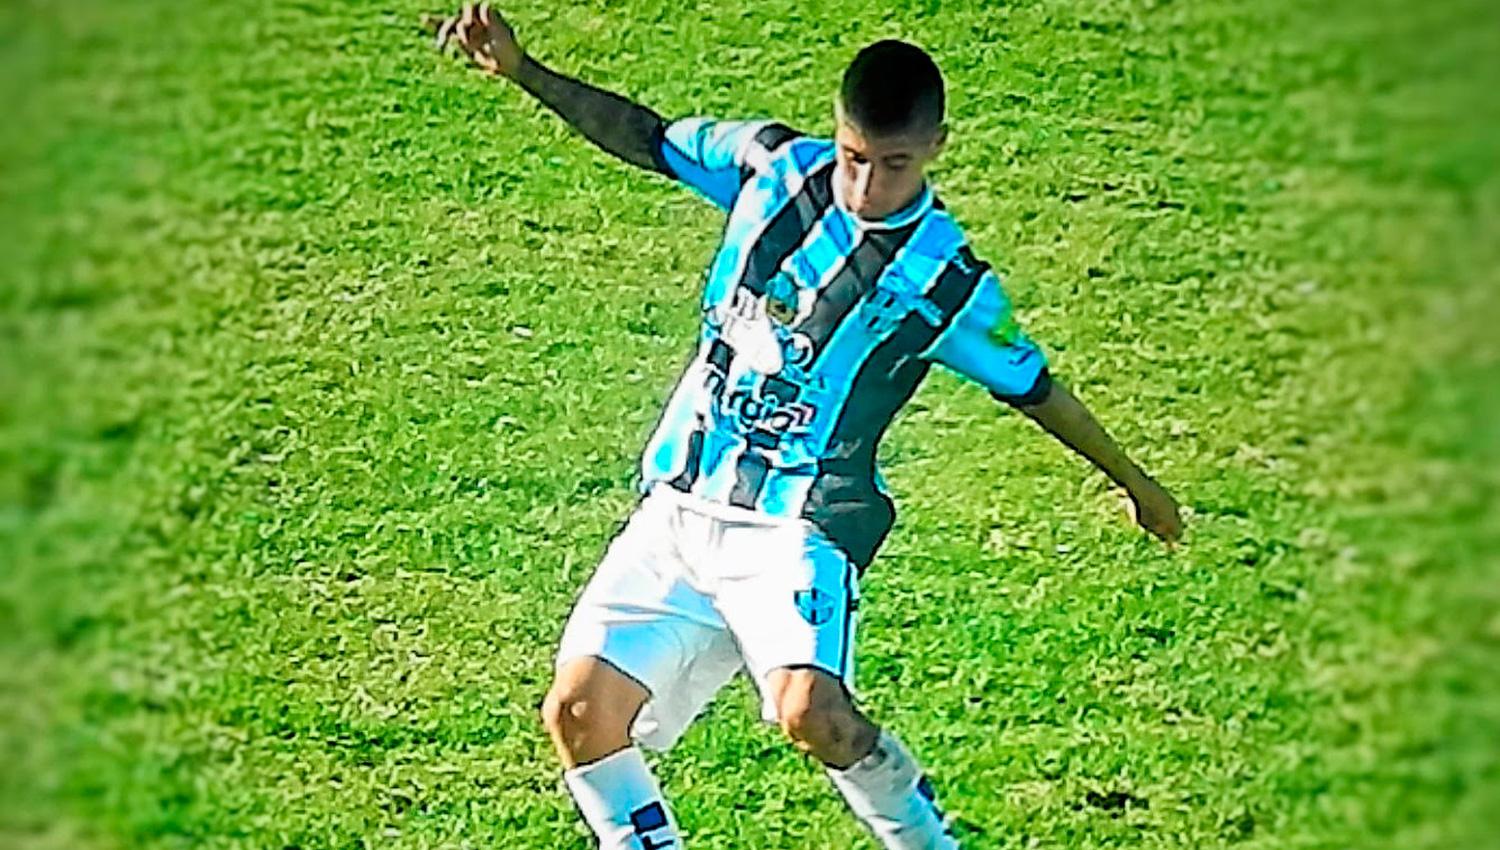 Ariel Chaves, el jugador más talentoso de Almagro.
FOTO TOMADA DE www.almagro100.com.ar